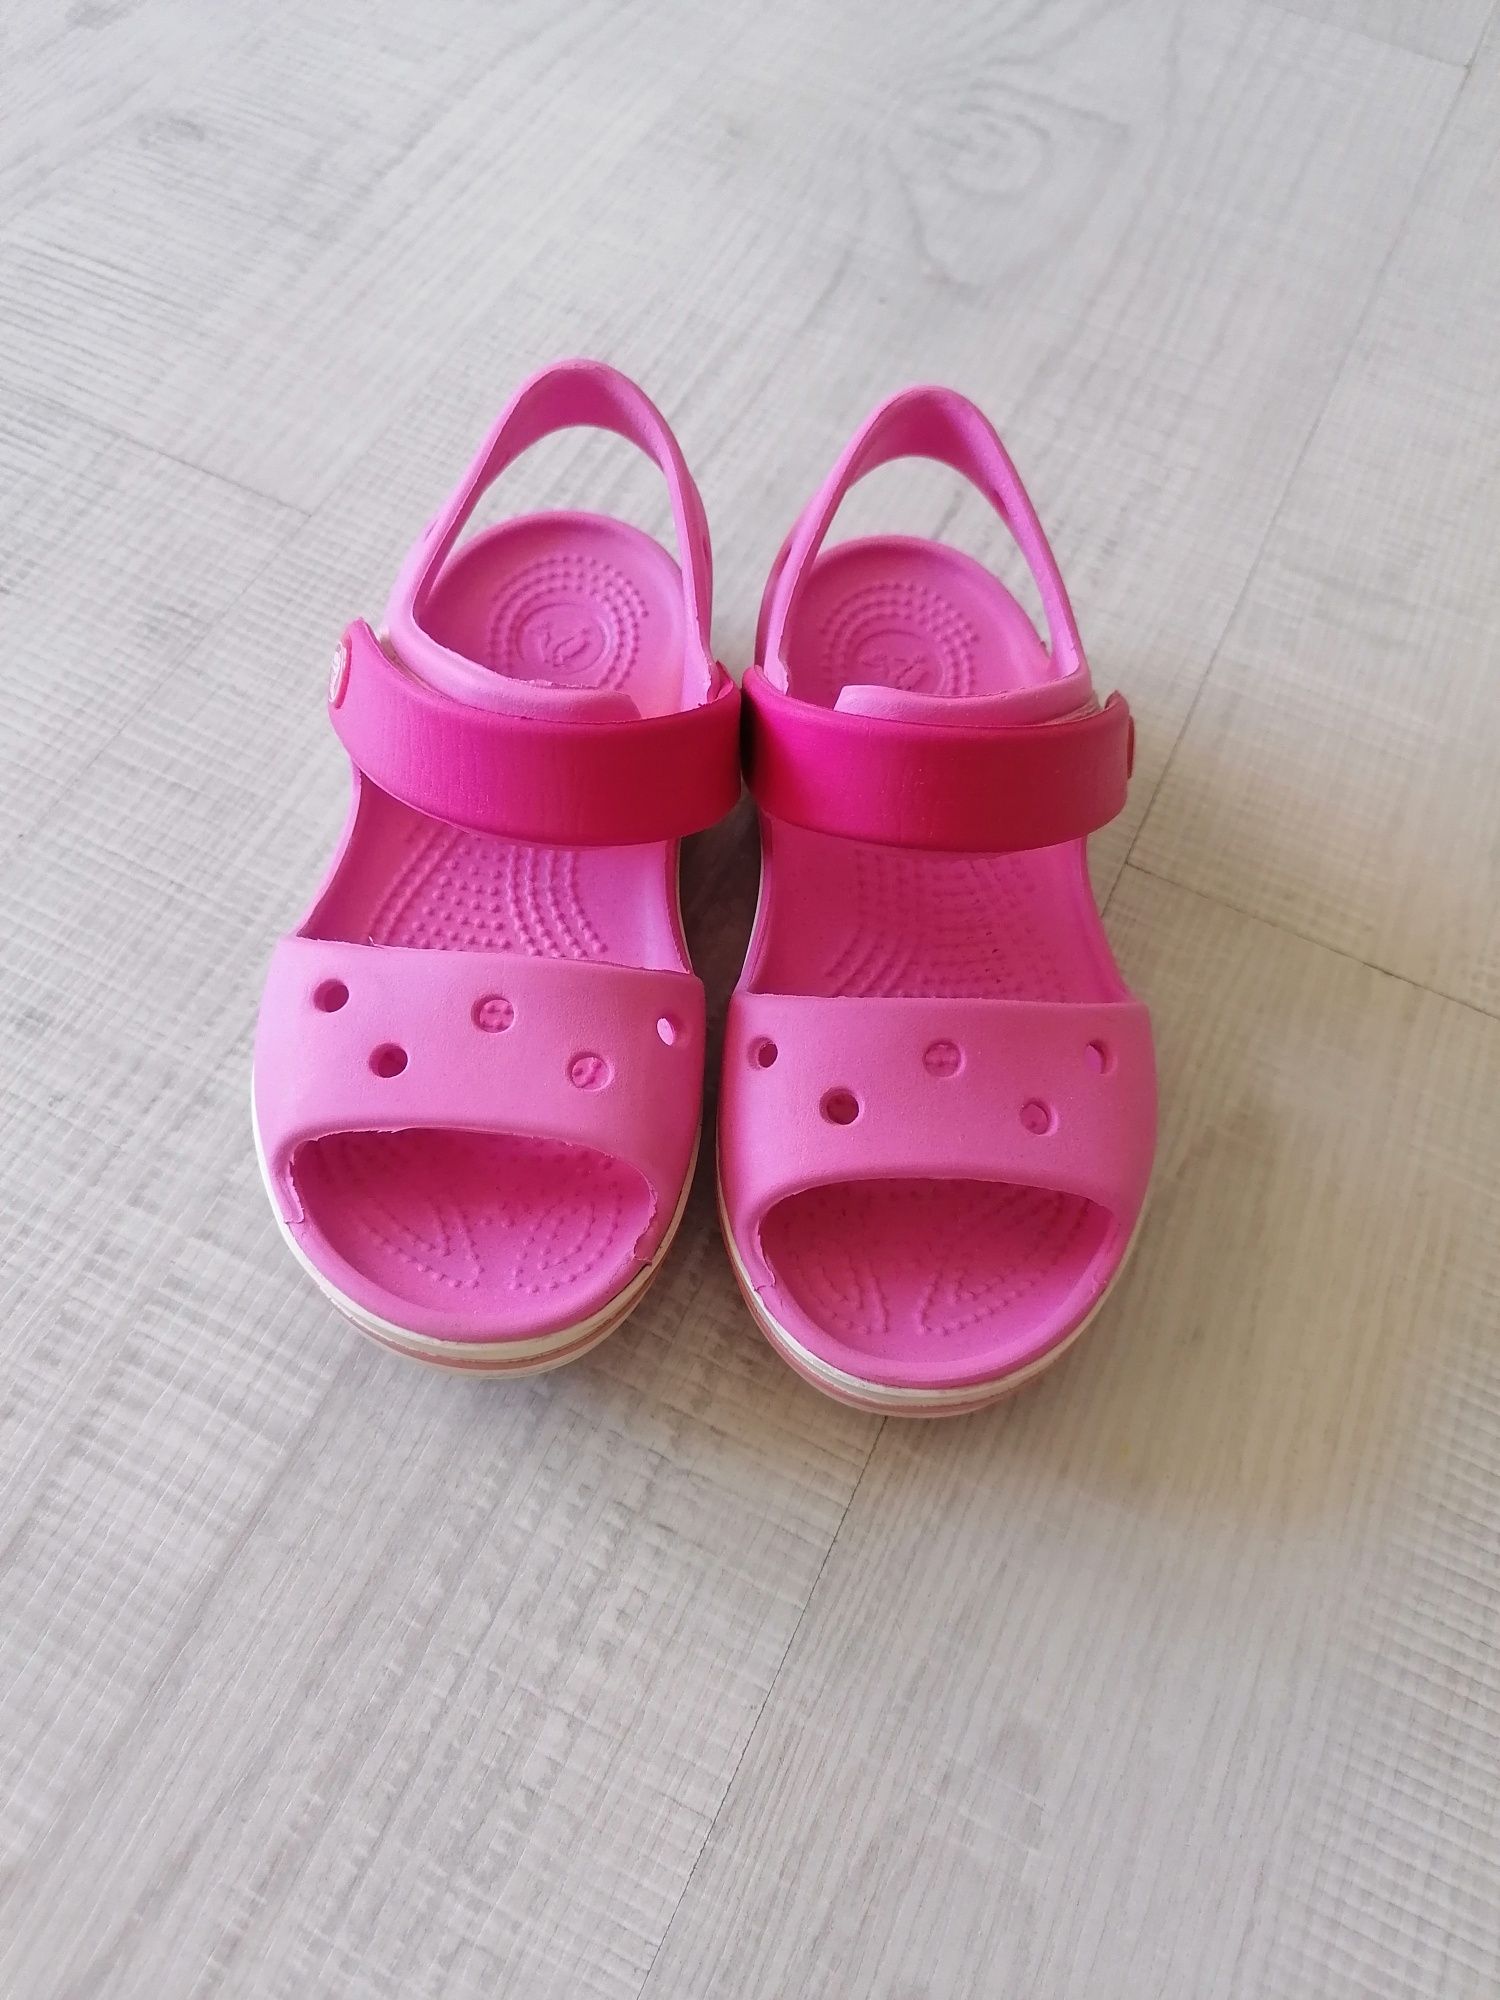 Детски сандалки Crocs, размер С10 -27-28ми